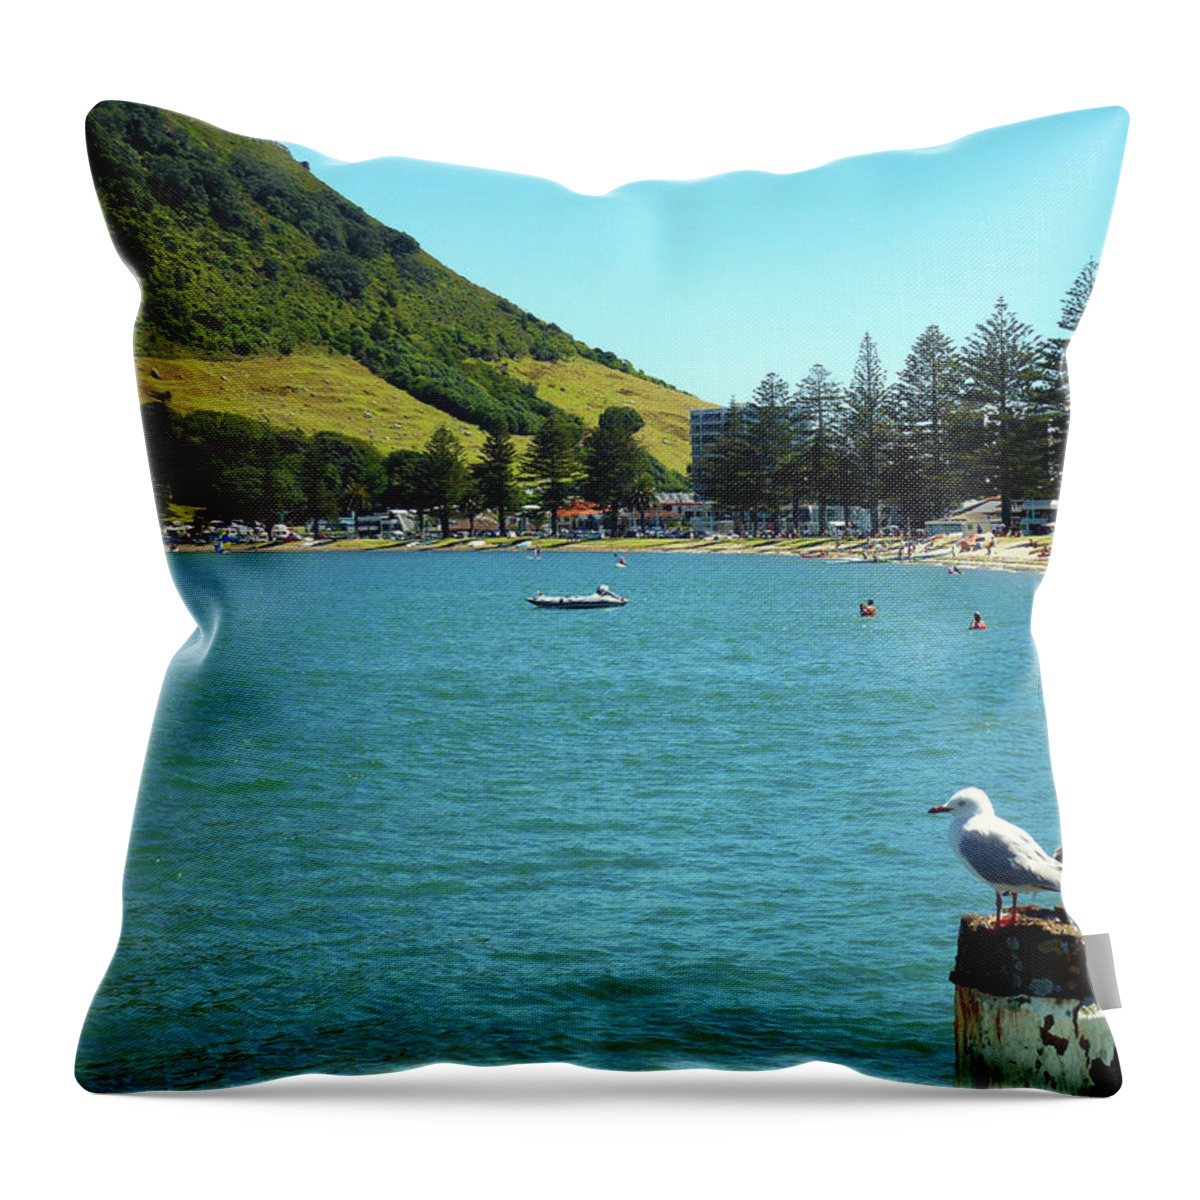 Pilot Bay Throw Pillow featuring the photograph Pilot Bay Beach 5 - Mt Maunganui Tauranga New Zealand by Selena Boron